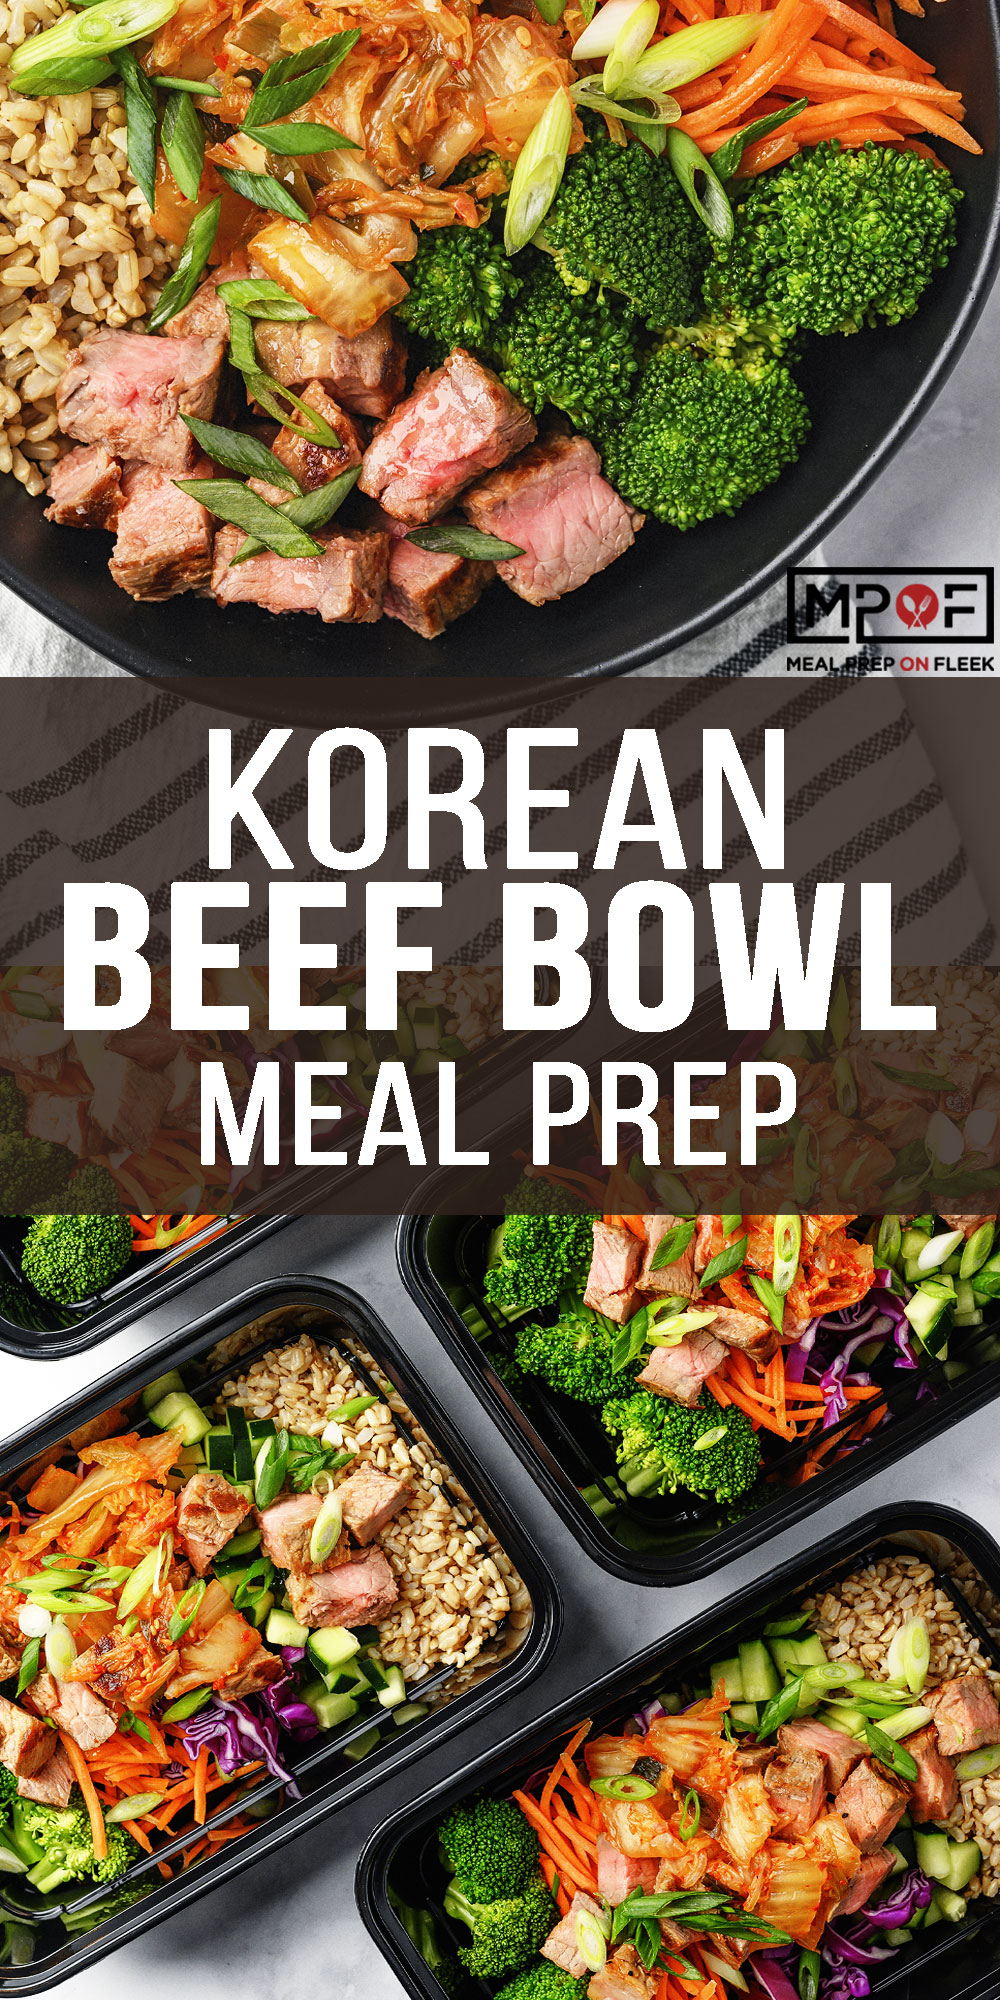 https://mealpreponfleek.com/wp-content/uploads/2019/06/Korean-Beef-Bowl-Pinterest-1.jpg